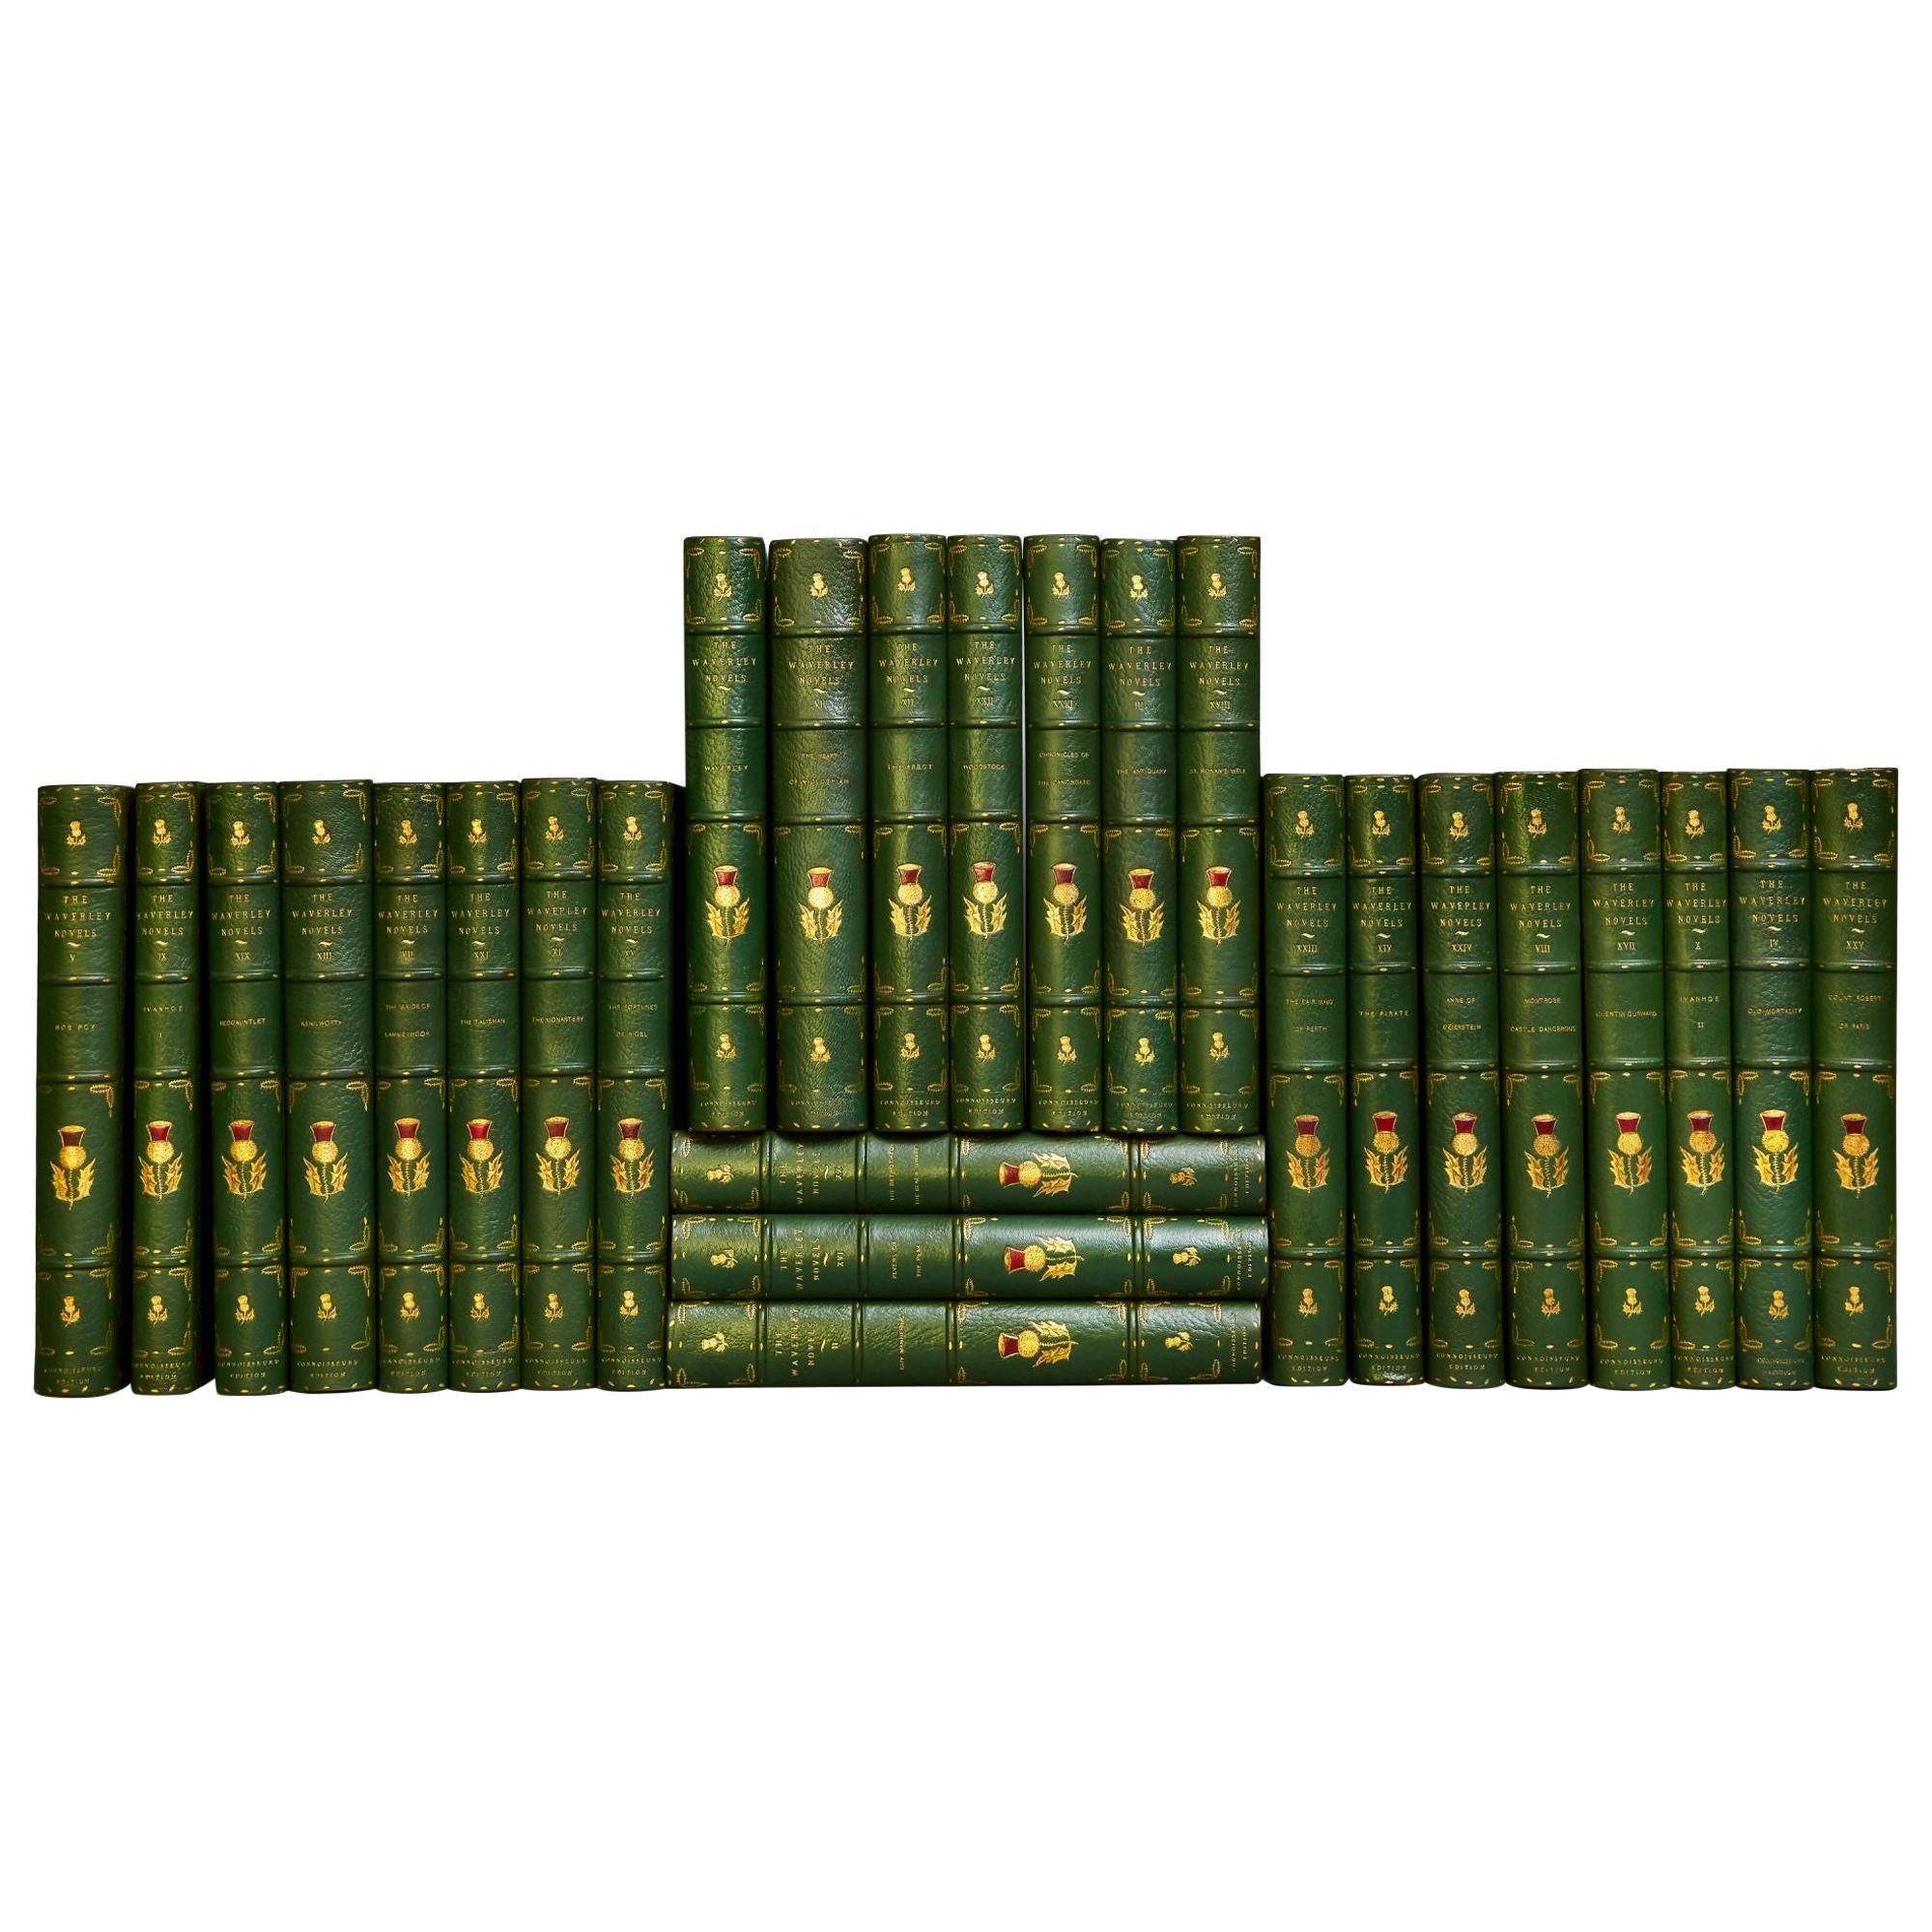 Sir Walter Scott's Waverley Novels